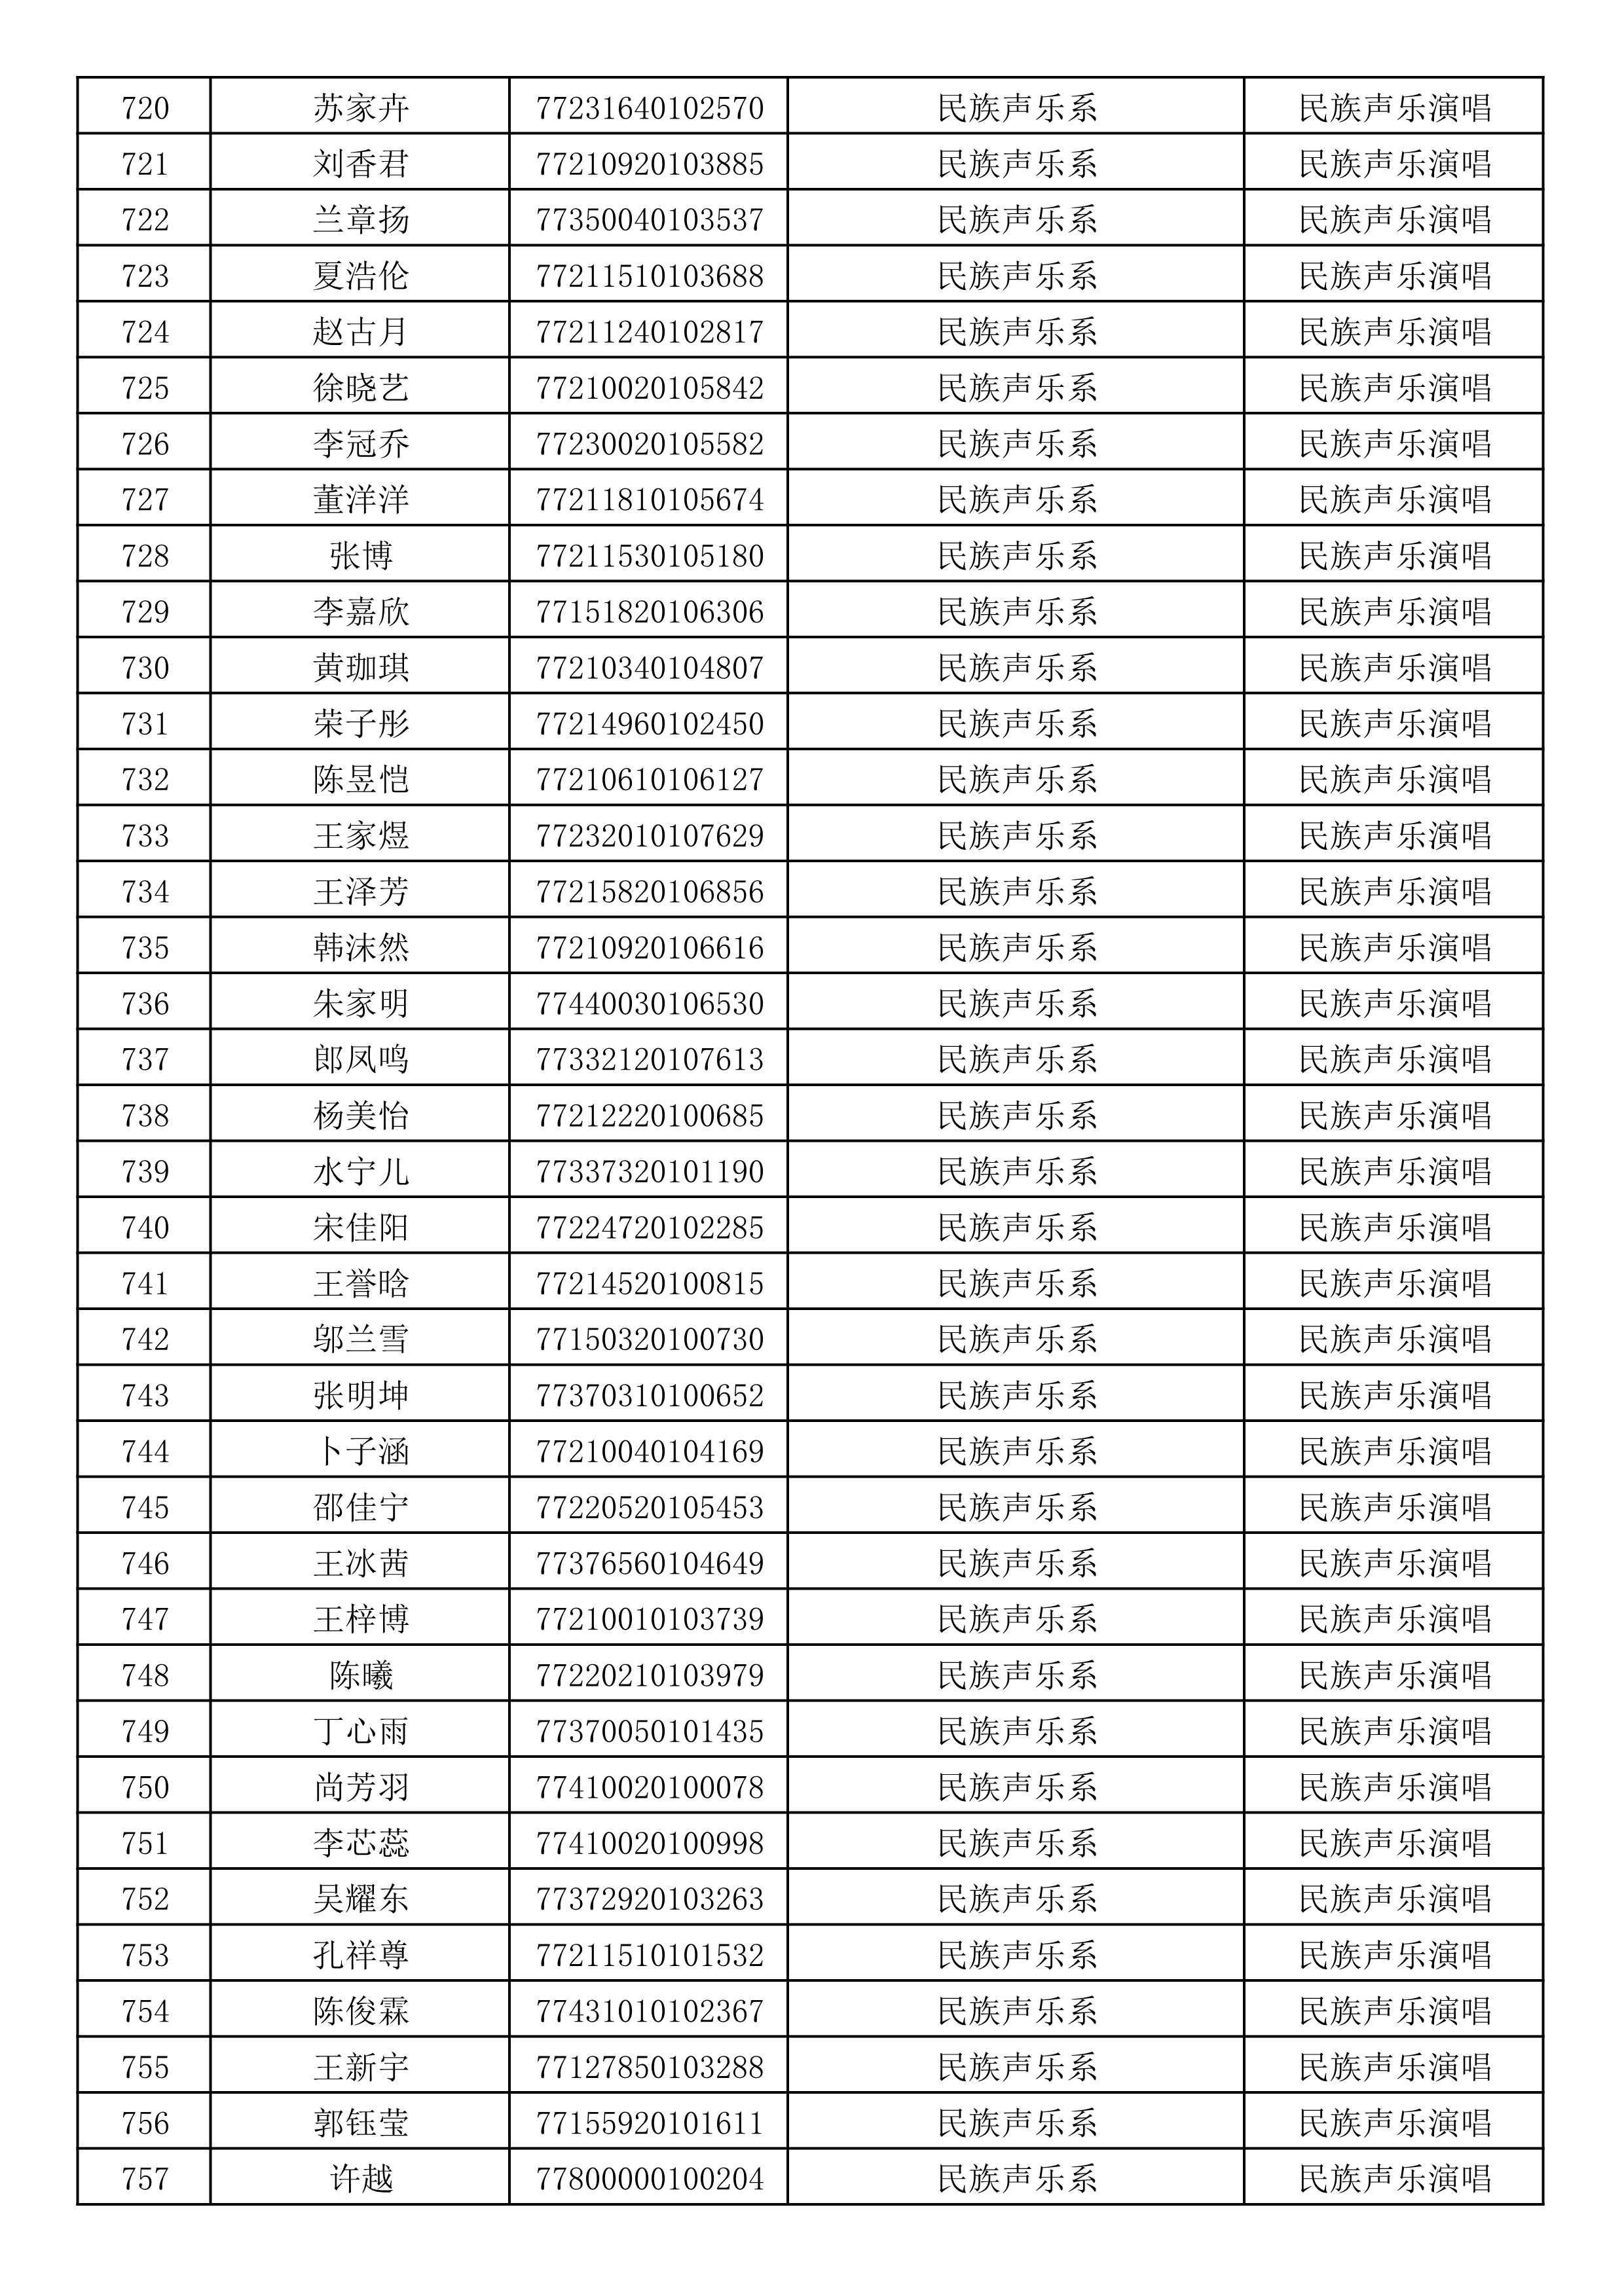 沈阳音乐学院2019年本科招生考试初试合格名单_20.jpg